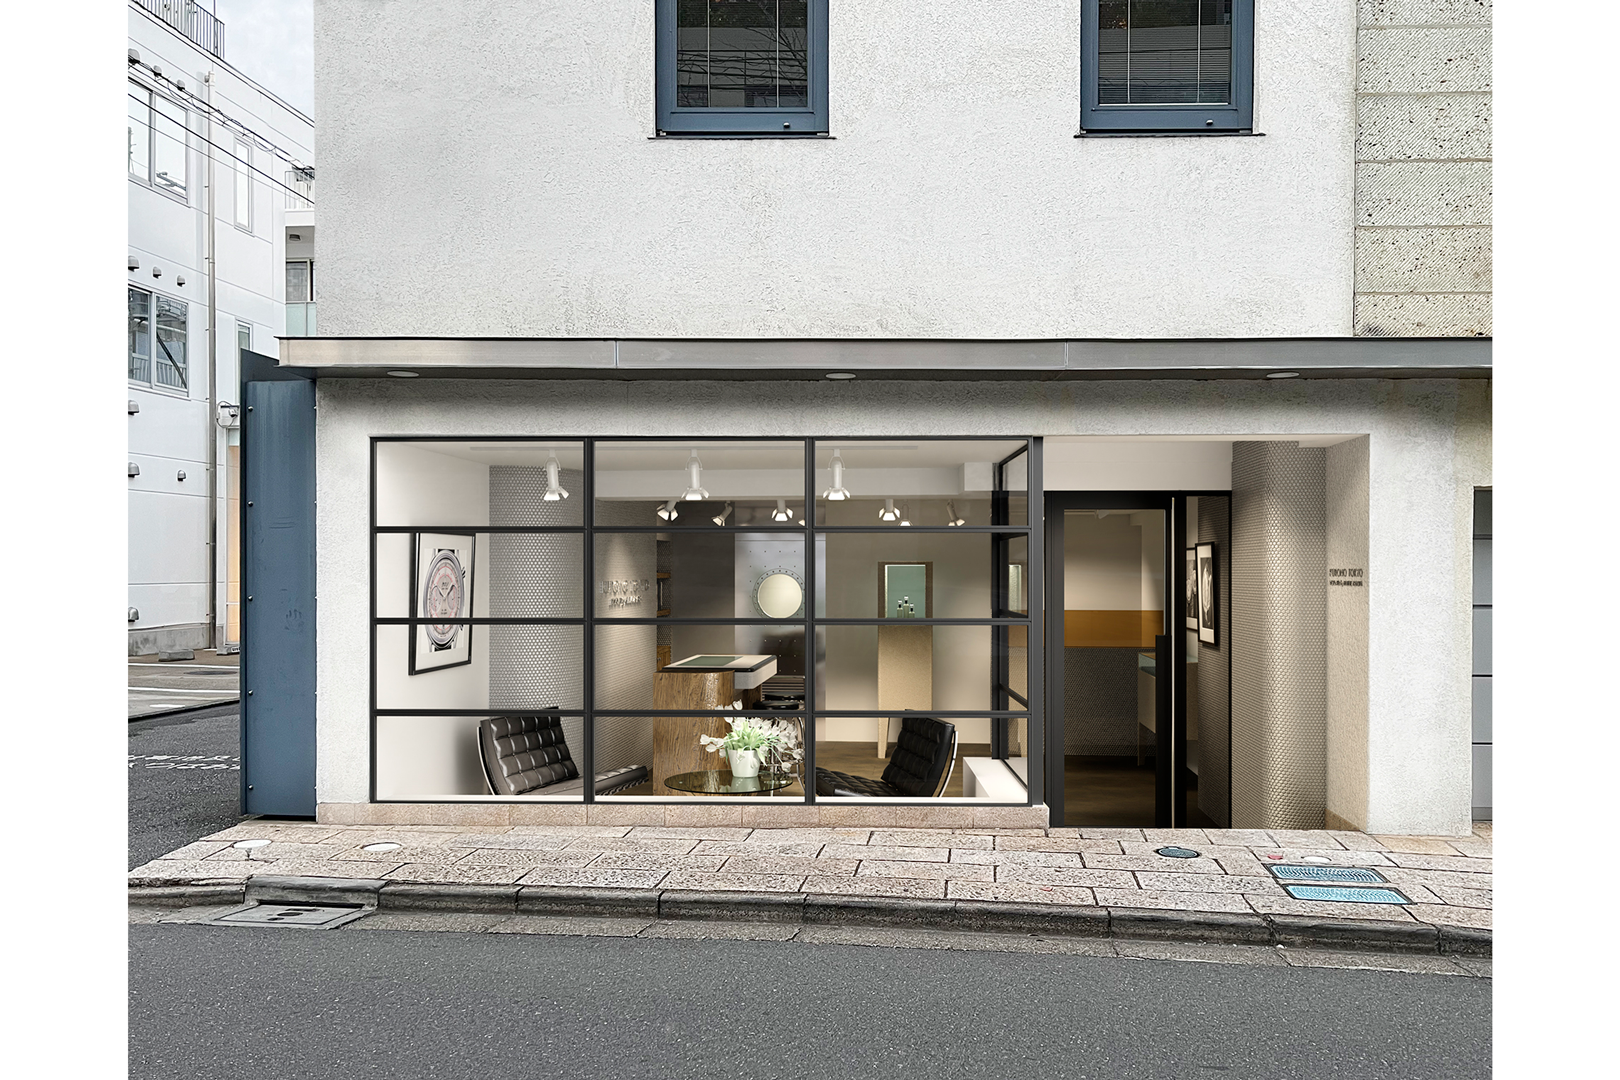 Street View of Aoyama Salon